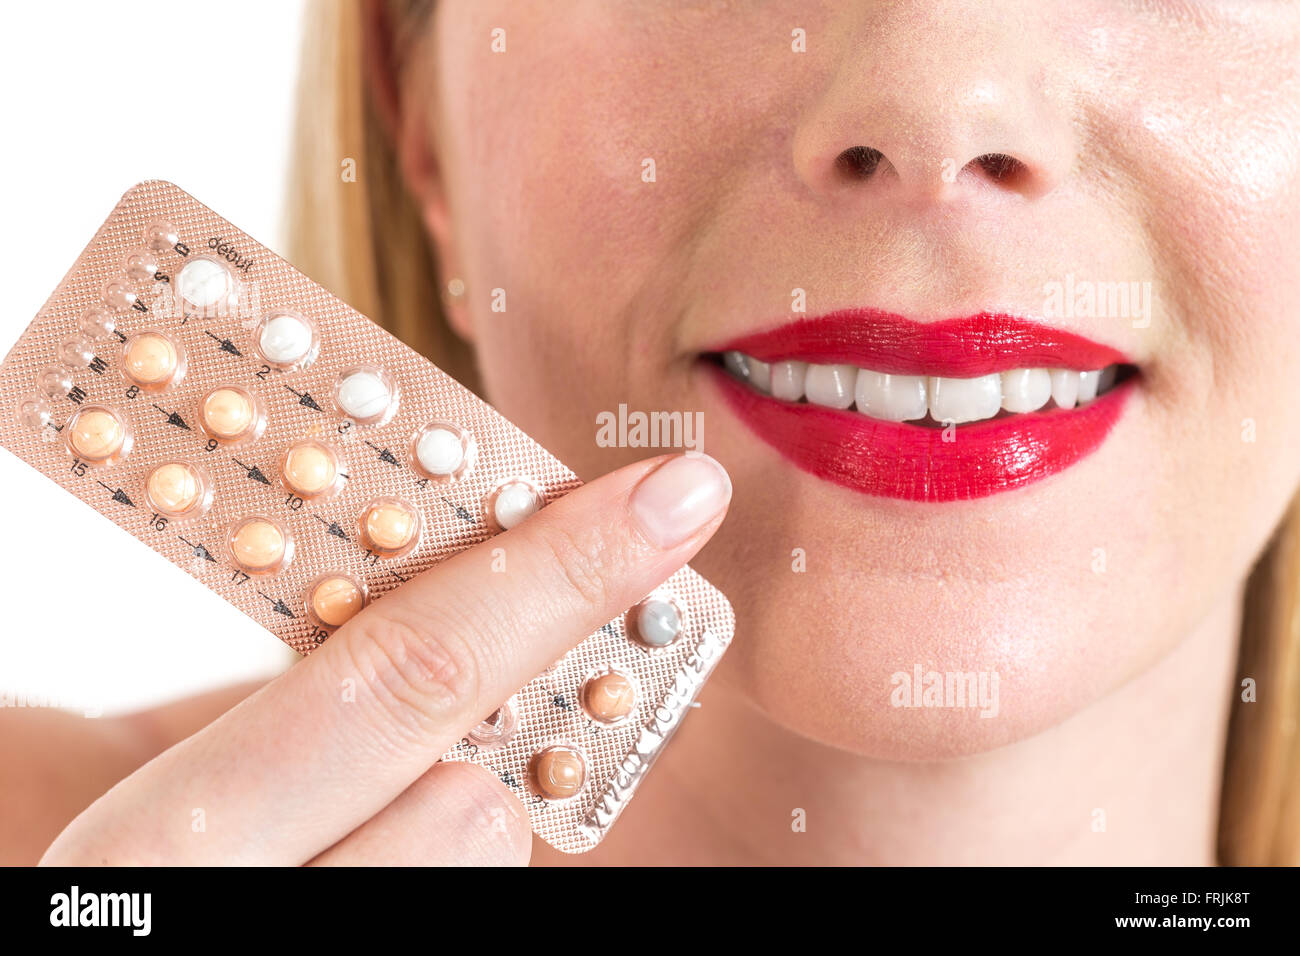 Schönheit Frau Mund mit rotem Lippenstift in der Nähe von Blister-Verpackungen von Pillen Stockfoto